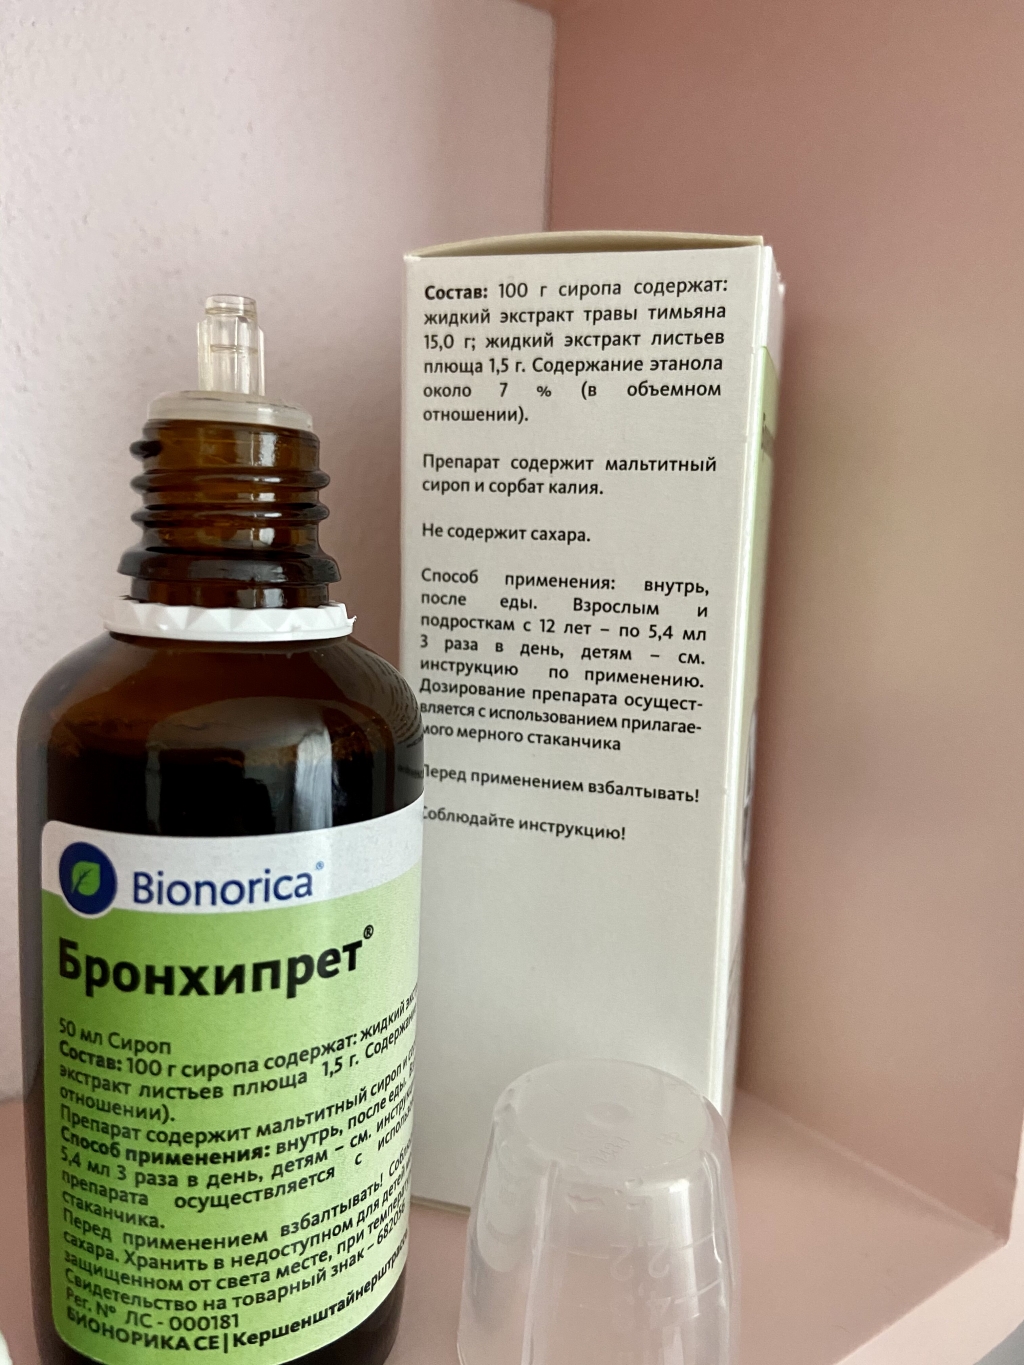 Bronchipret (Бронхипрет) - Лучшее лекарство, при влажном кашле.